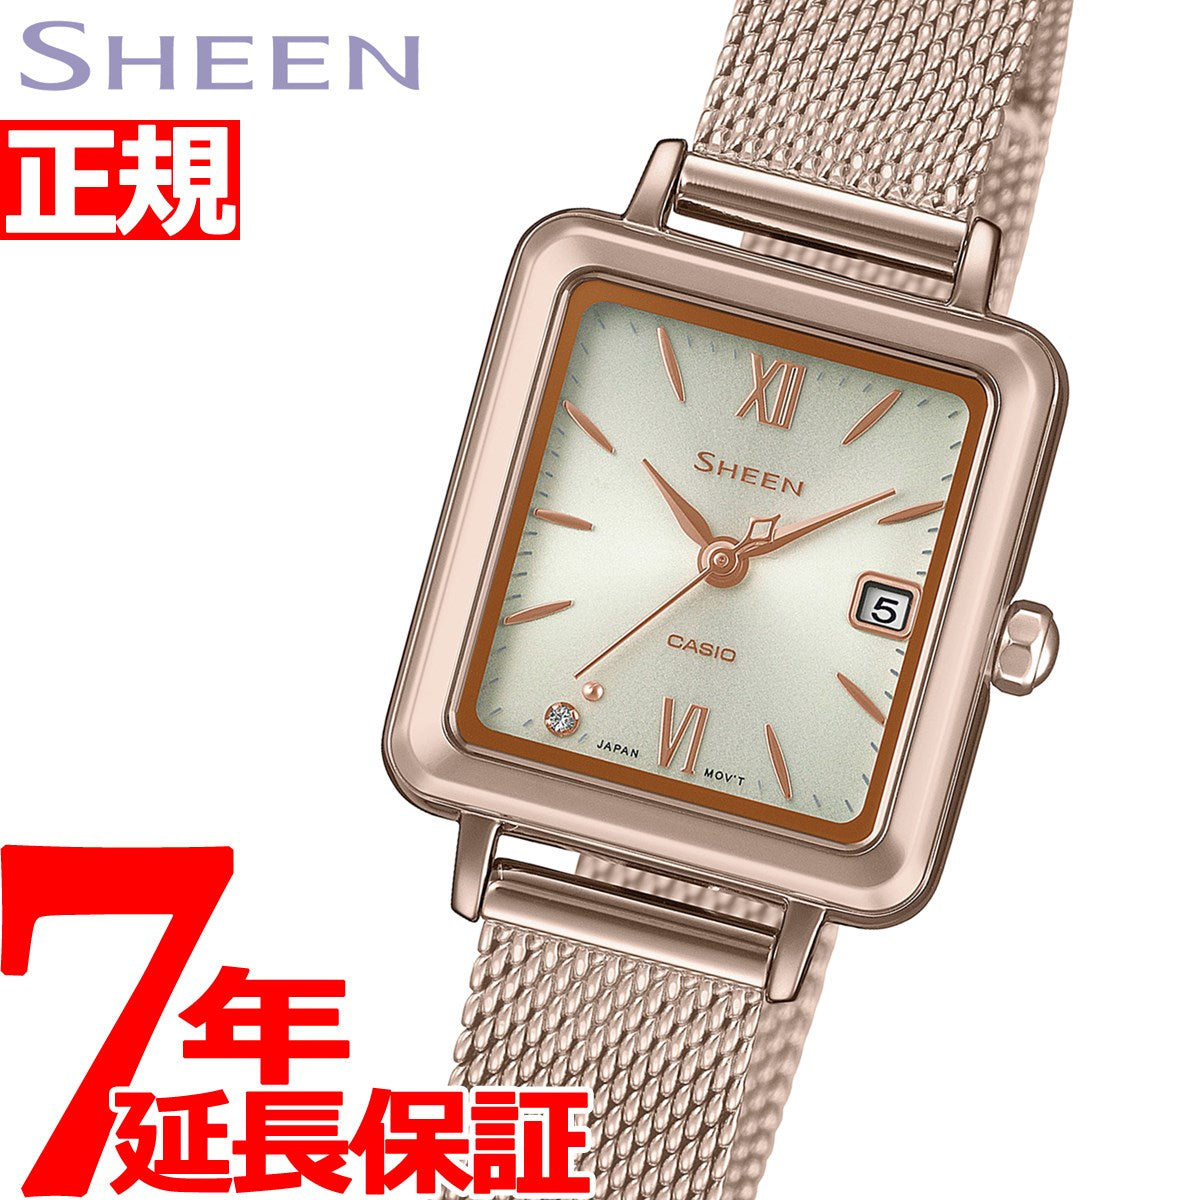 カシオ シーン CASIO SHEEN ソーラー 腕時計 レディース SHS-D400CGM 